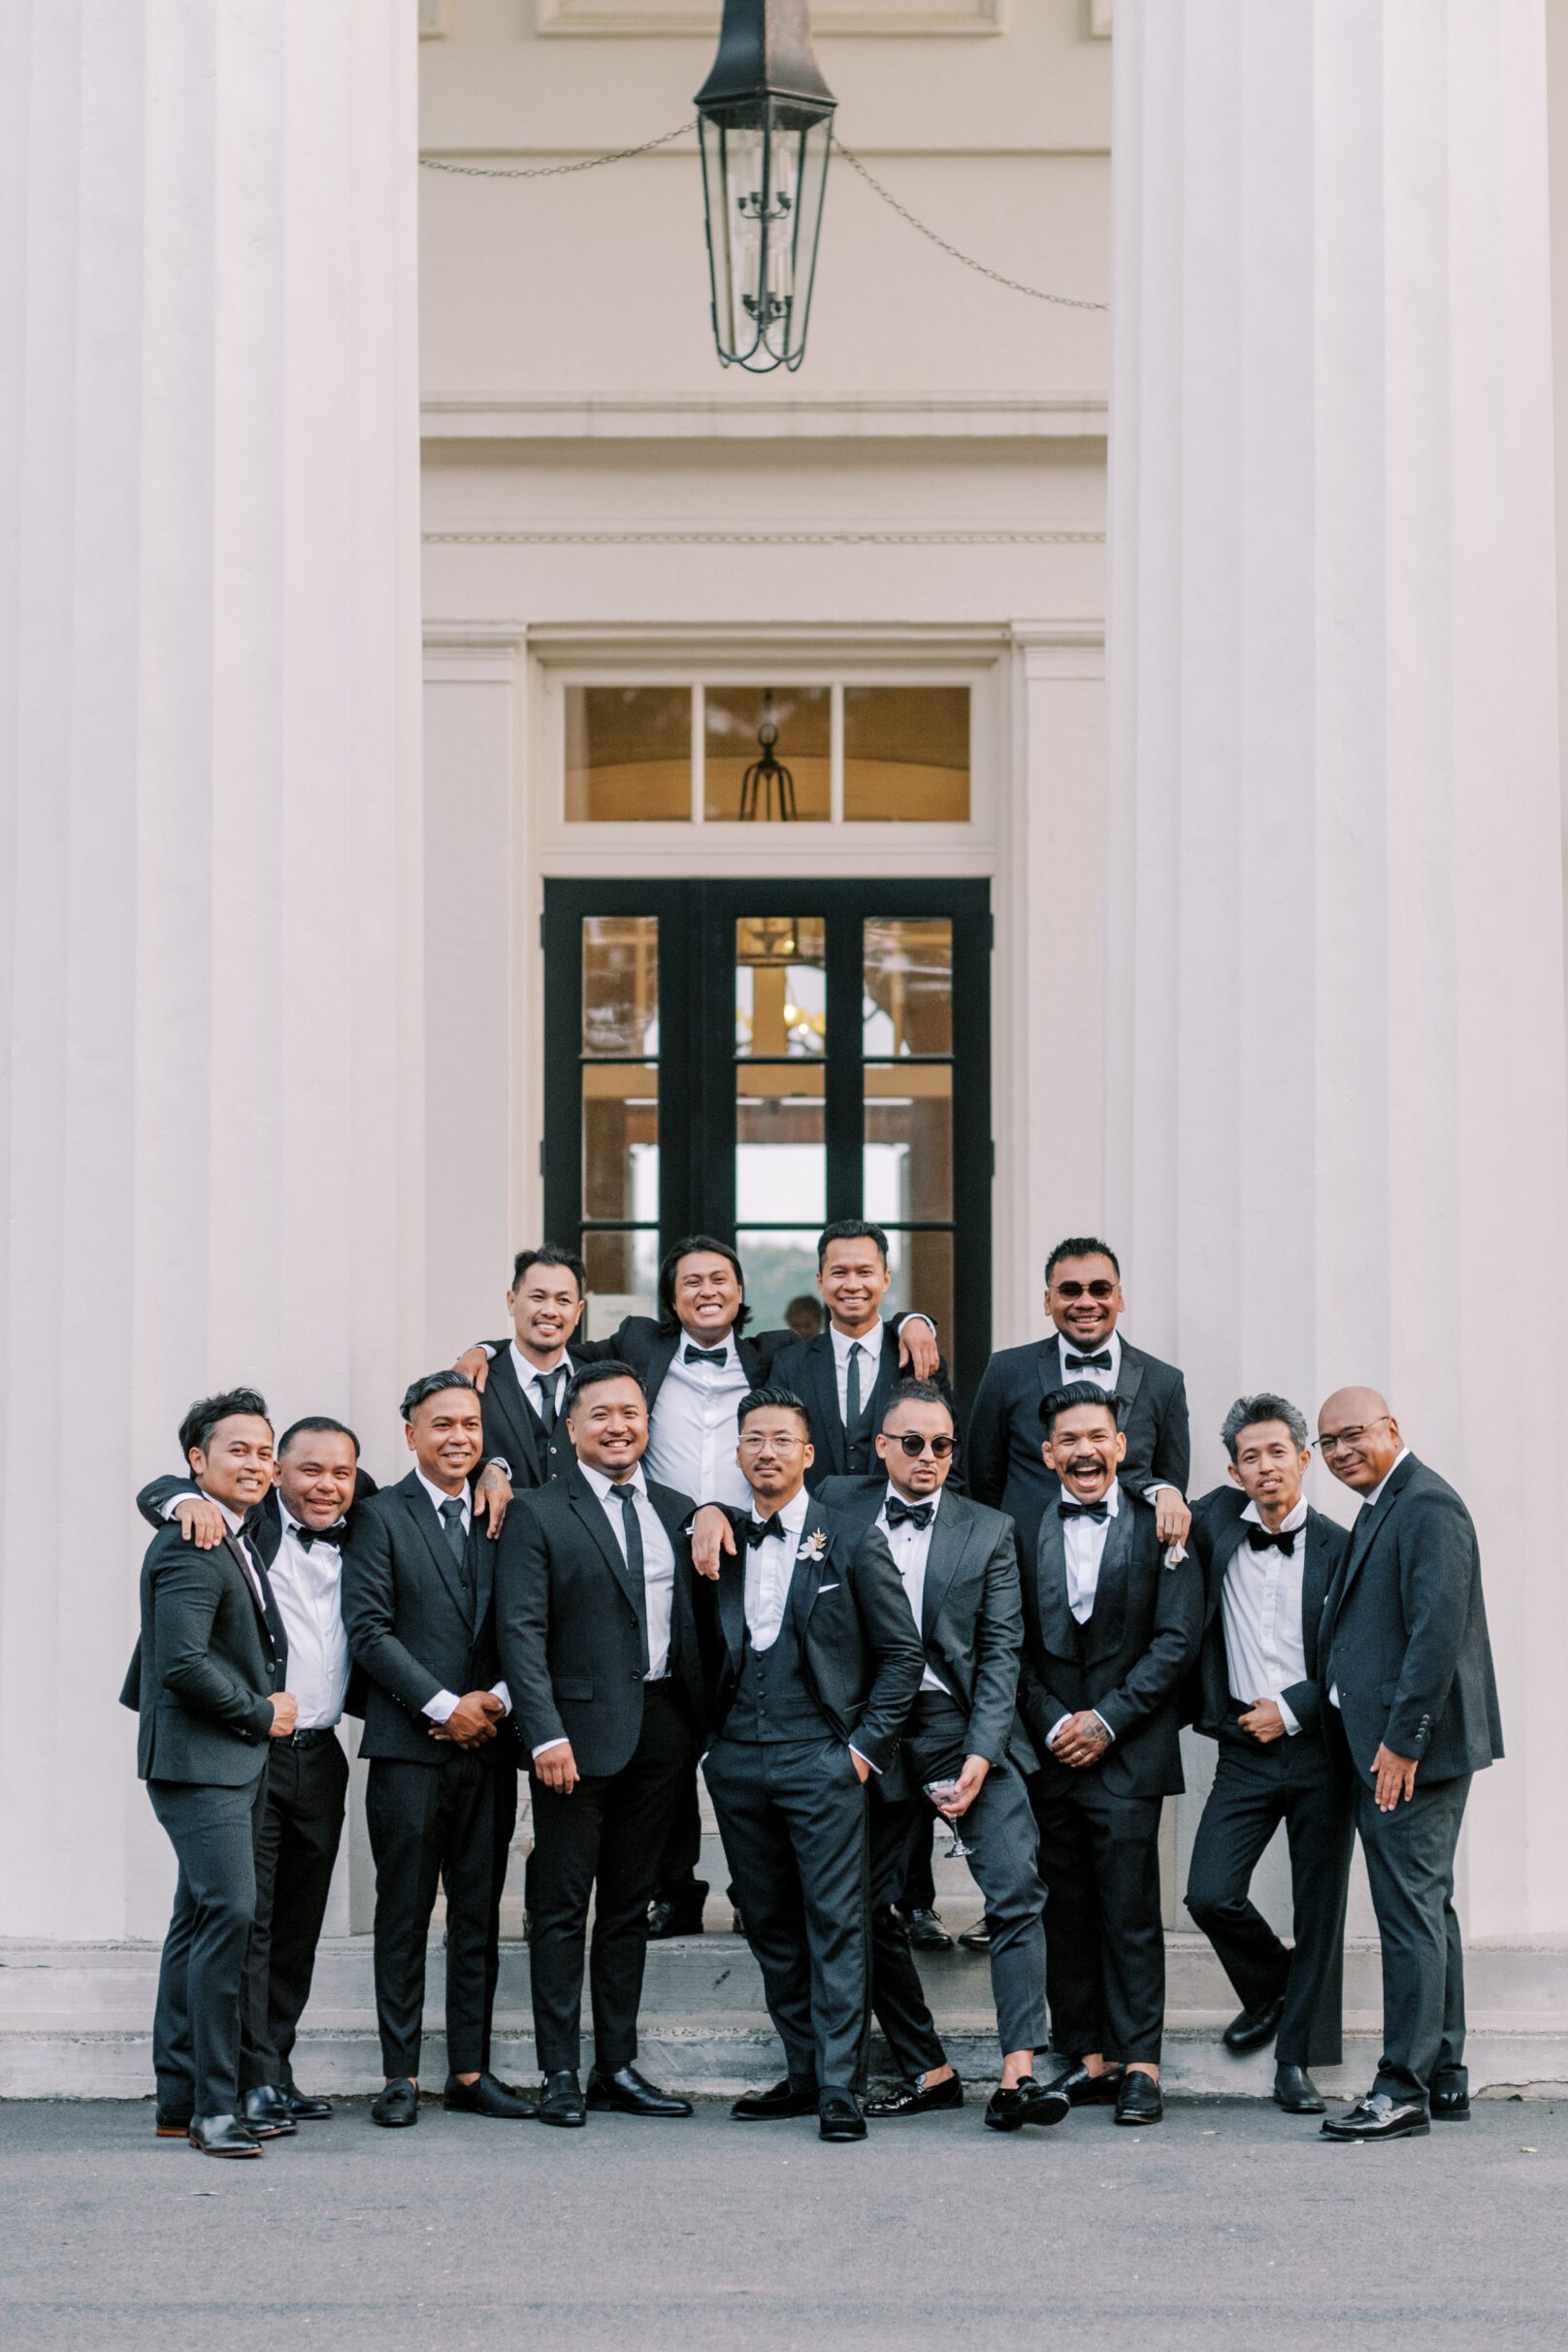 French riviera inspired wedding at Wadsworth Mansion CT blacktie groomsmen